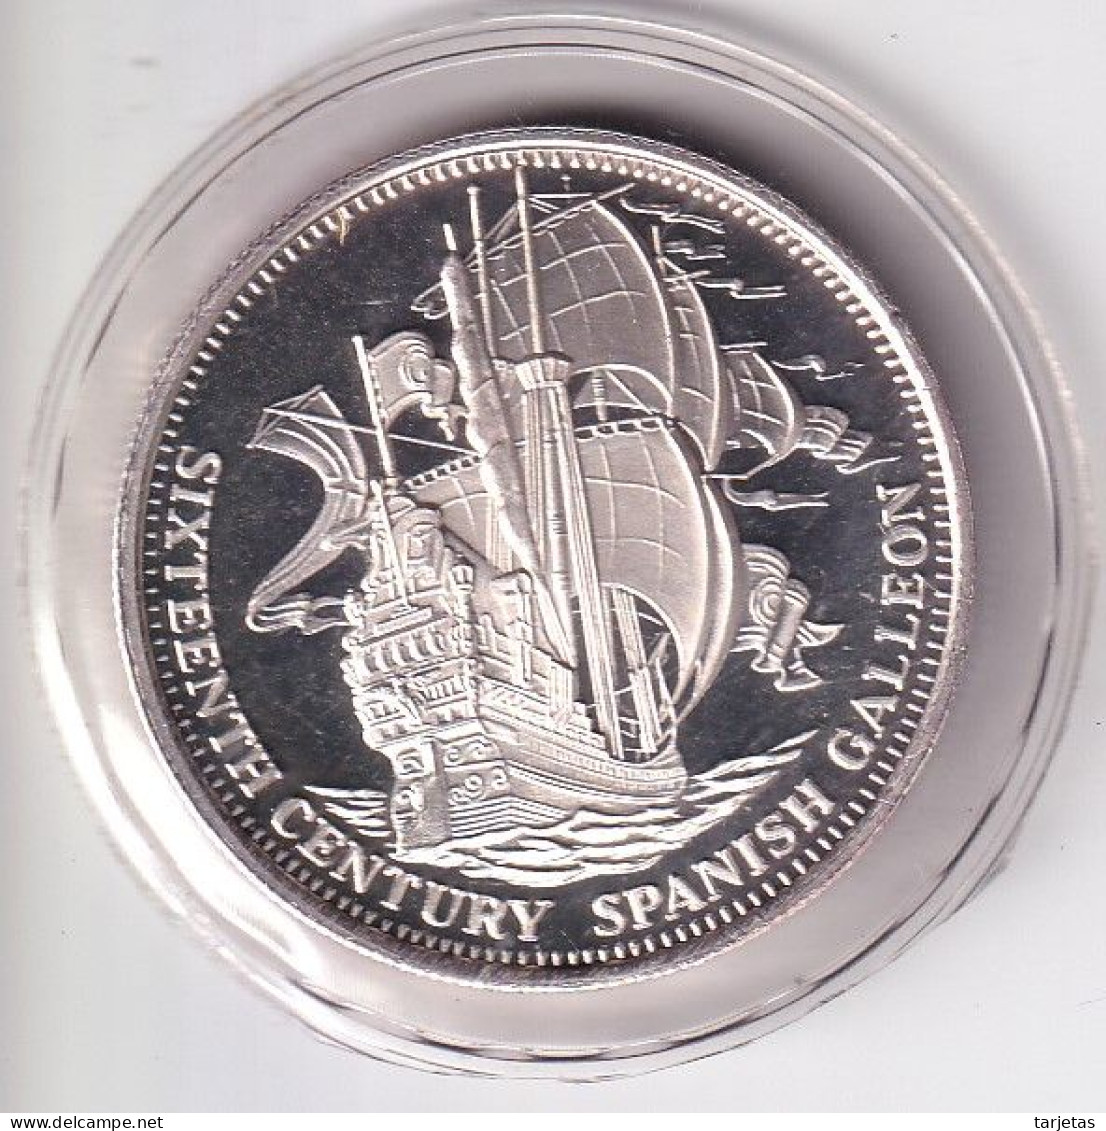 MONEDA DE PLATA DE ESTADOS UNIDOS DE 1 ONZA DE SIXTEENTH VENTURY SPANISH CALLEON (BARCO-SHIP) - Conmemorativas